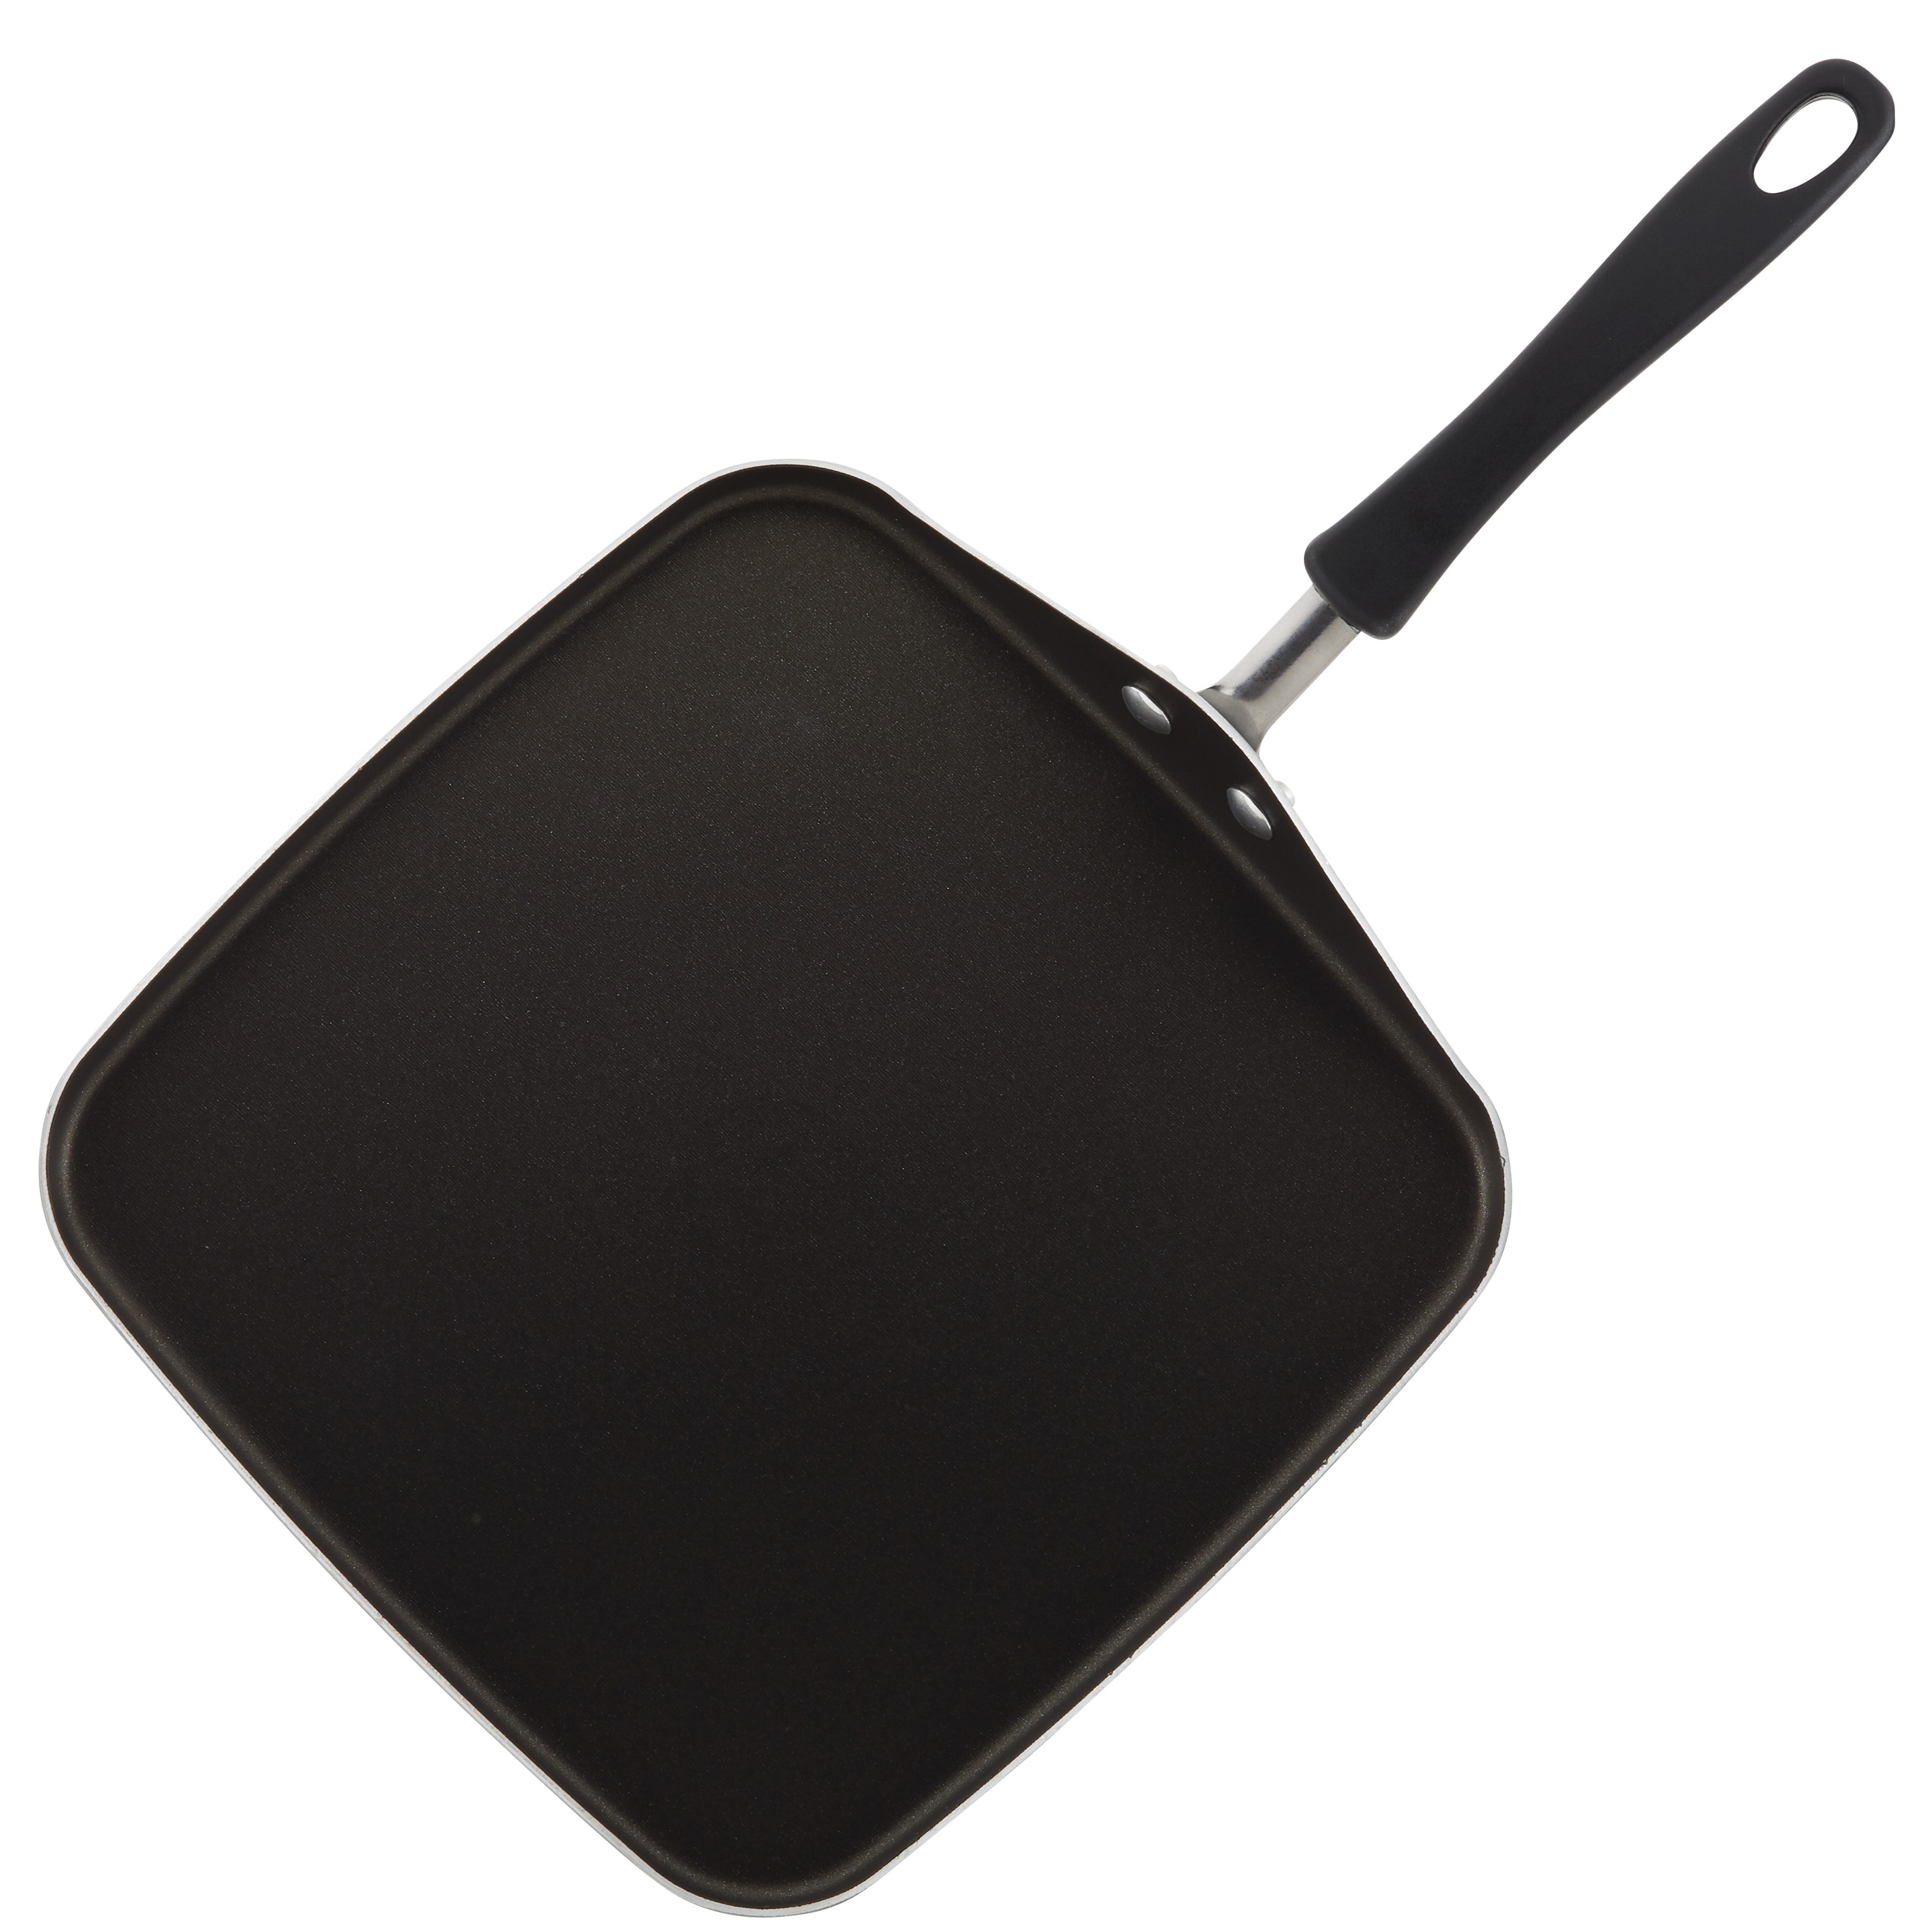 Farberware 11-inch Aluminum Non-Stick Square Griddle, Black